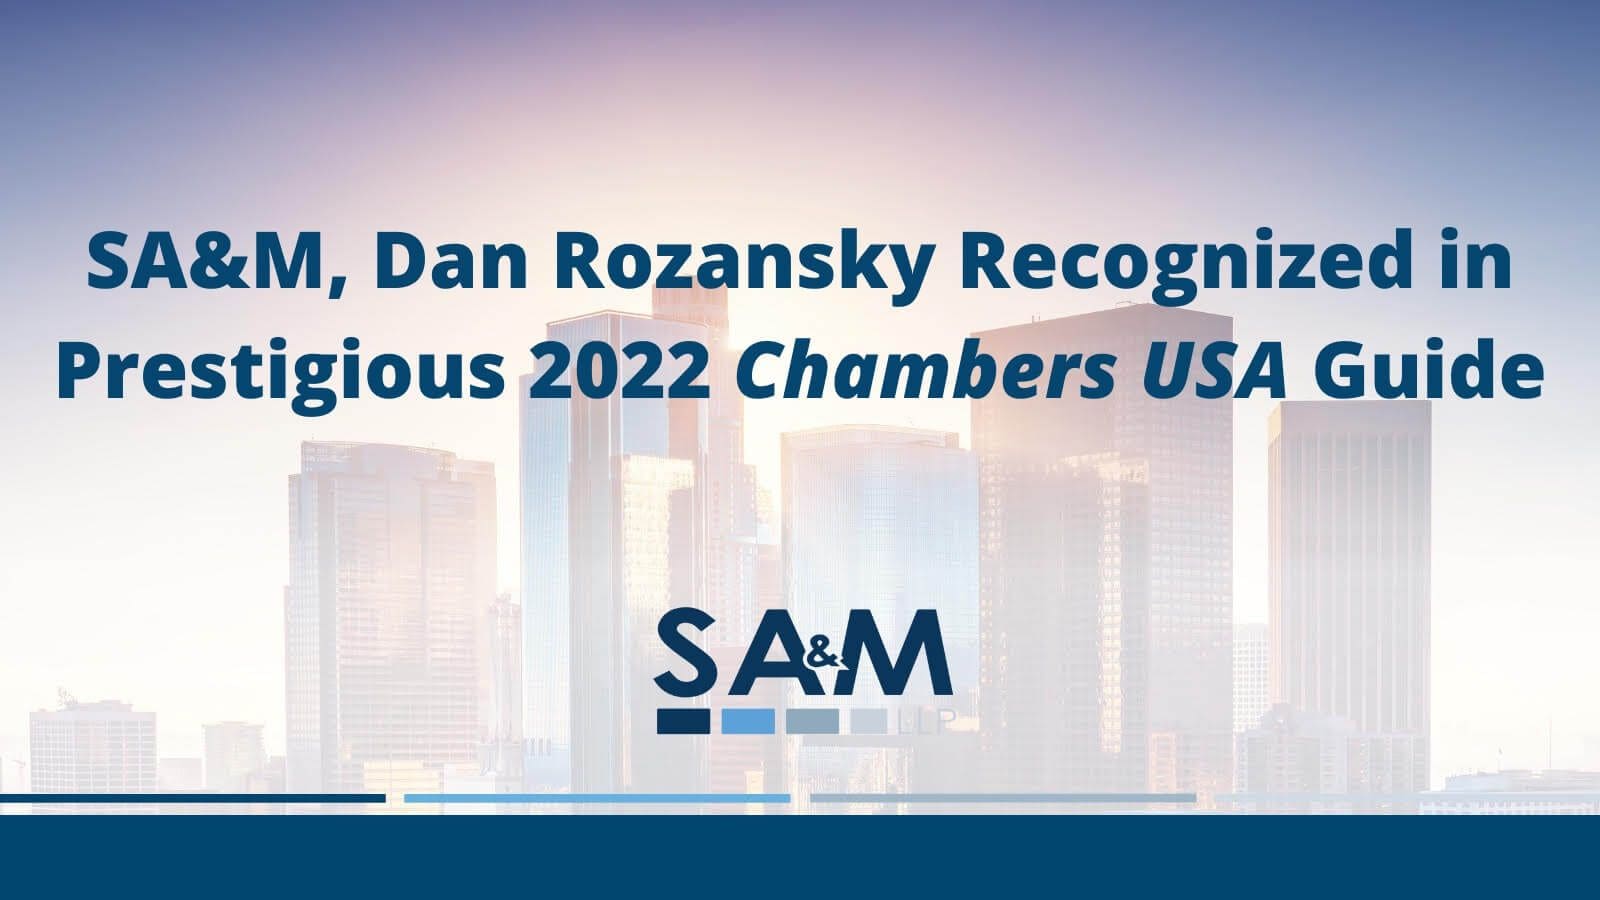 SA&M, Dan Rozansky Recognized in Prestigious 2022 Chambers USA Guide